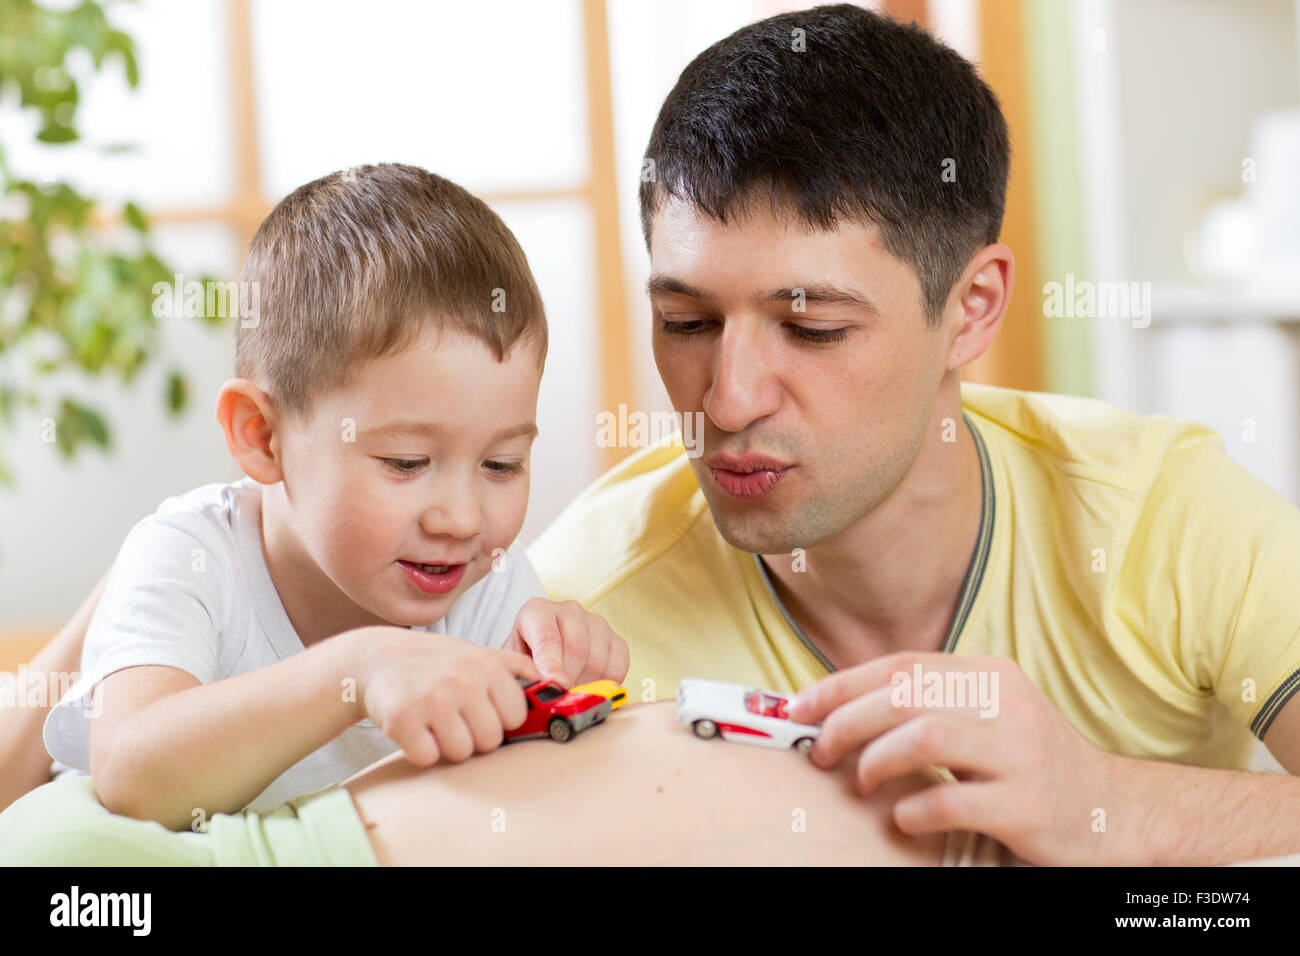 Fröhliche Vater und Sohn haben ein lustiges Spiel mit Spielzeugauto auf Bauch der schwangeren Frau. Stockfoto